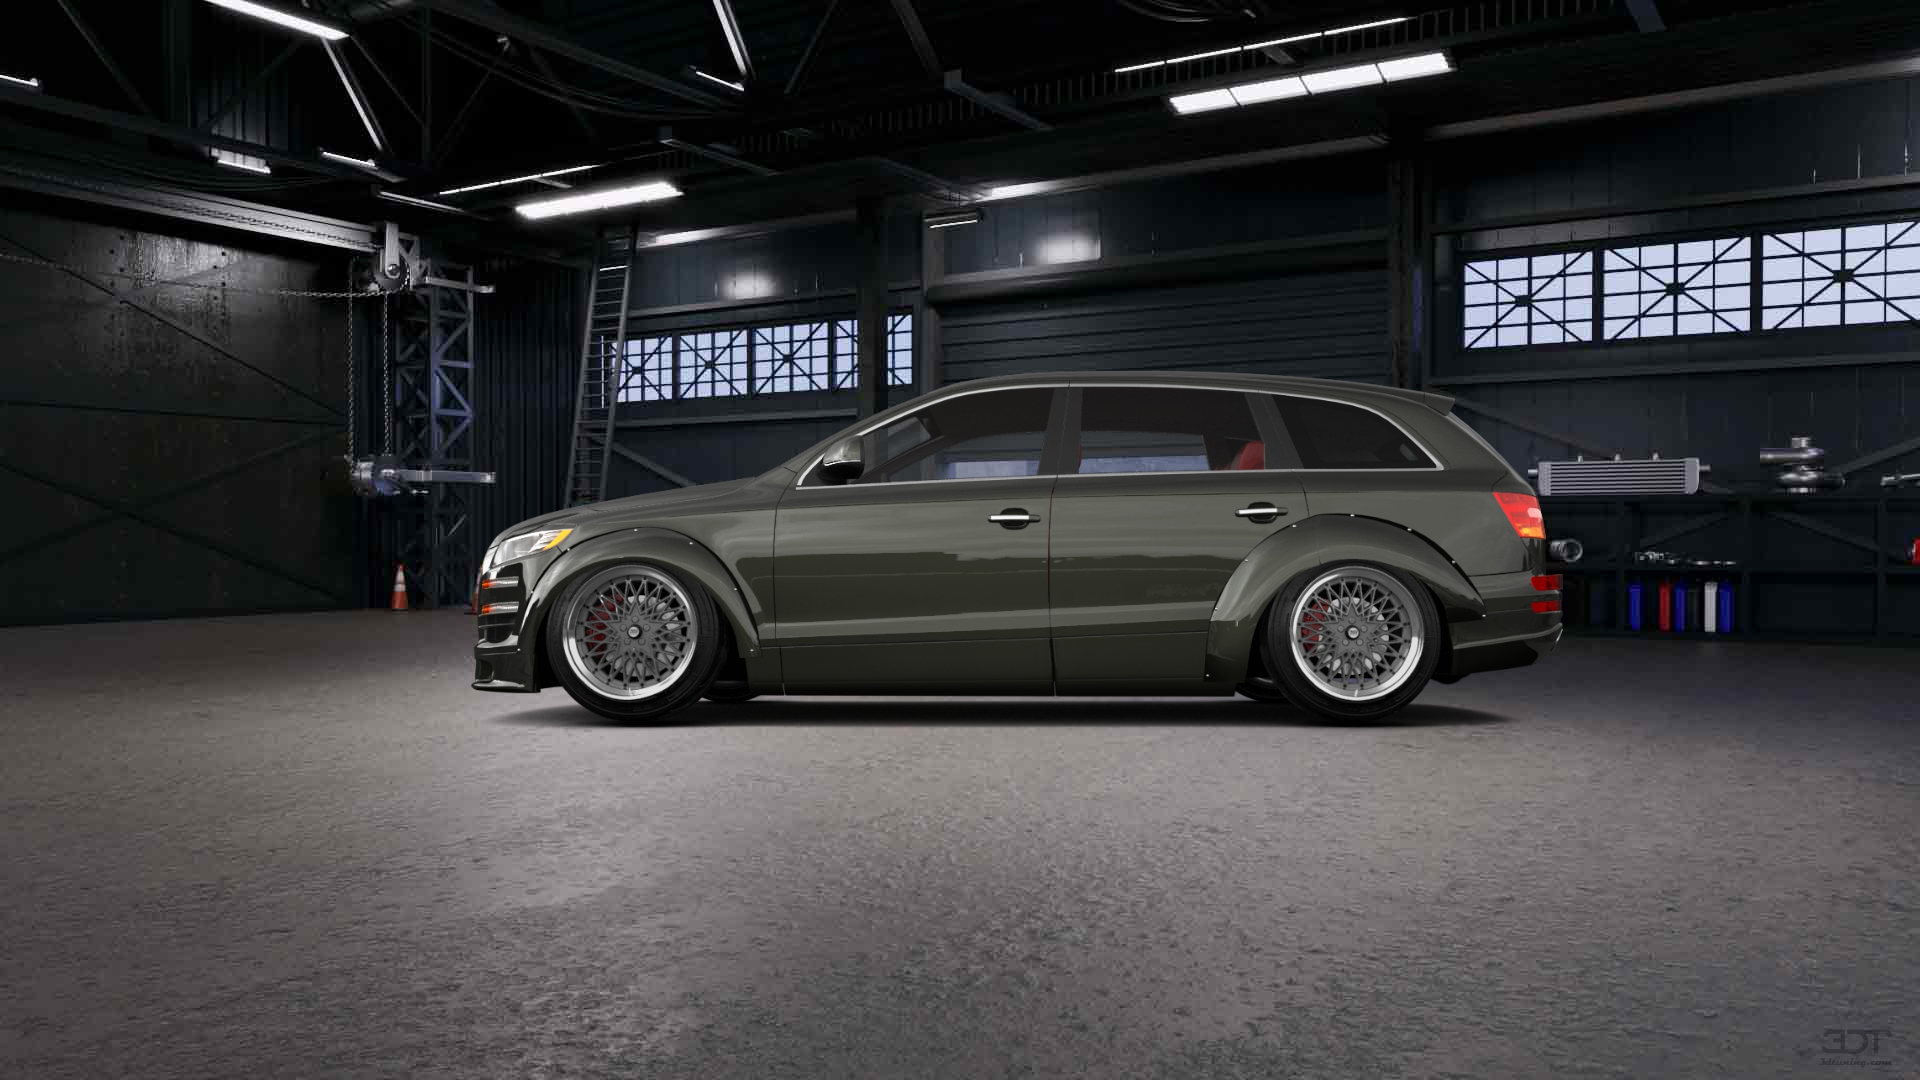 Audi Q7 Luxury SUV 2010 tuning